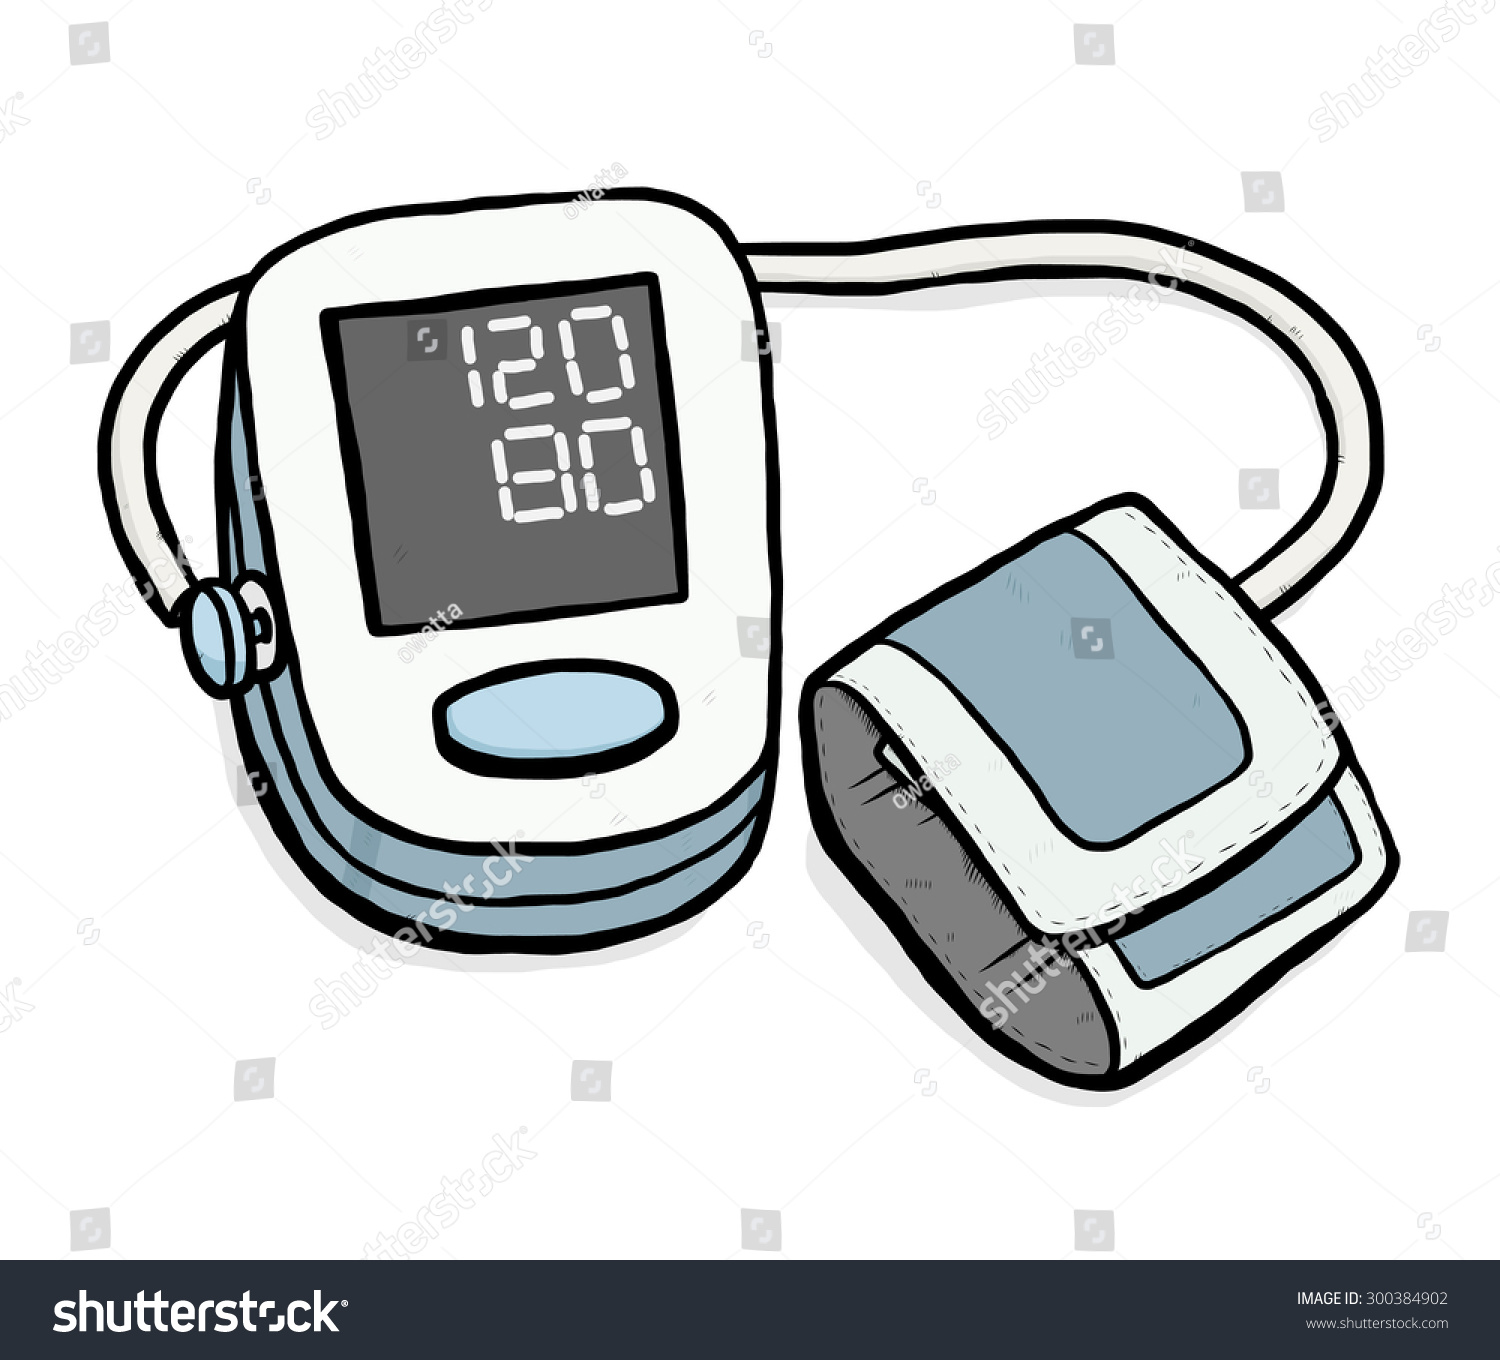 clipart blood pressure cuff - photo #37